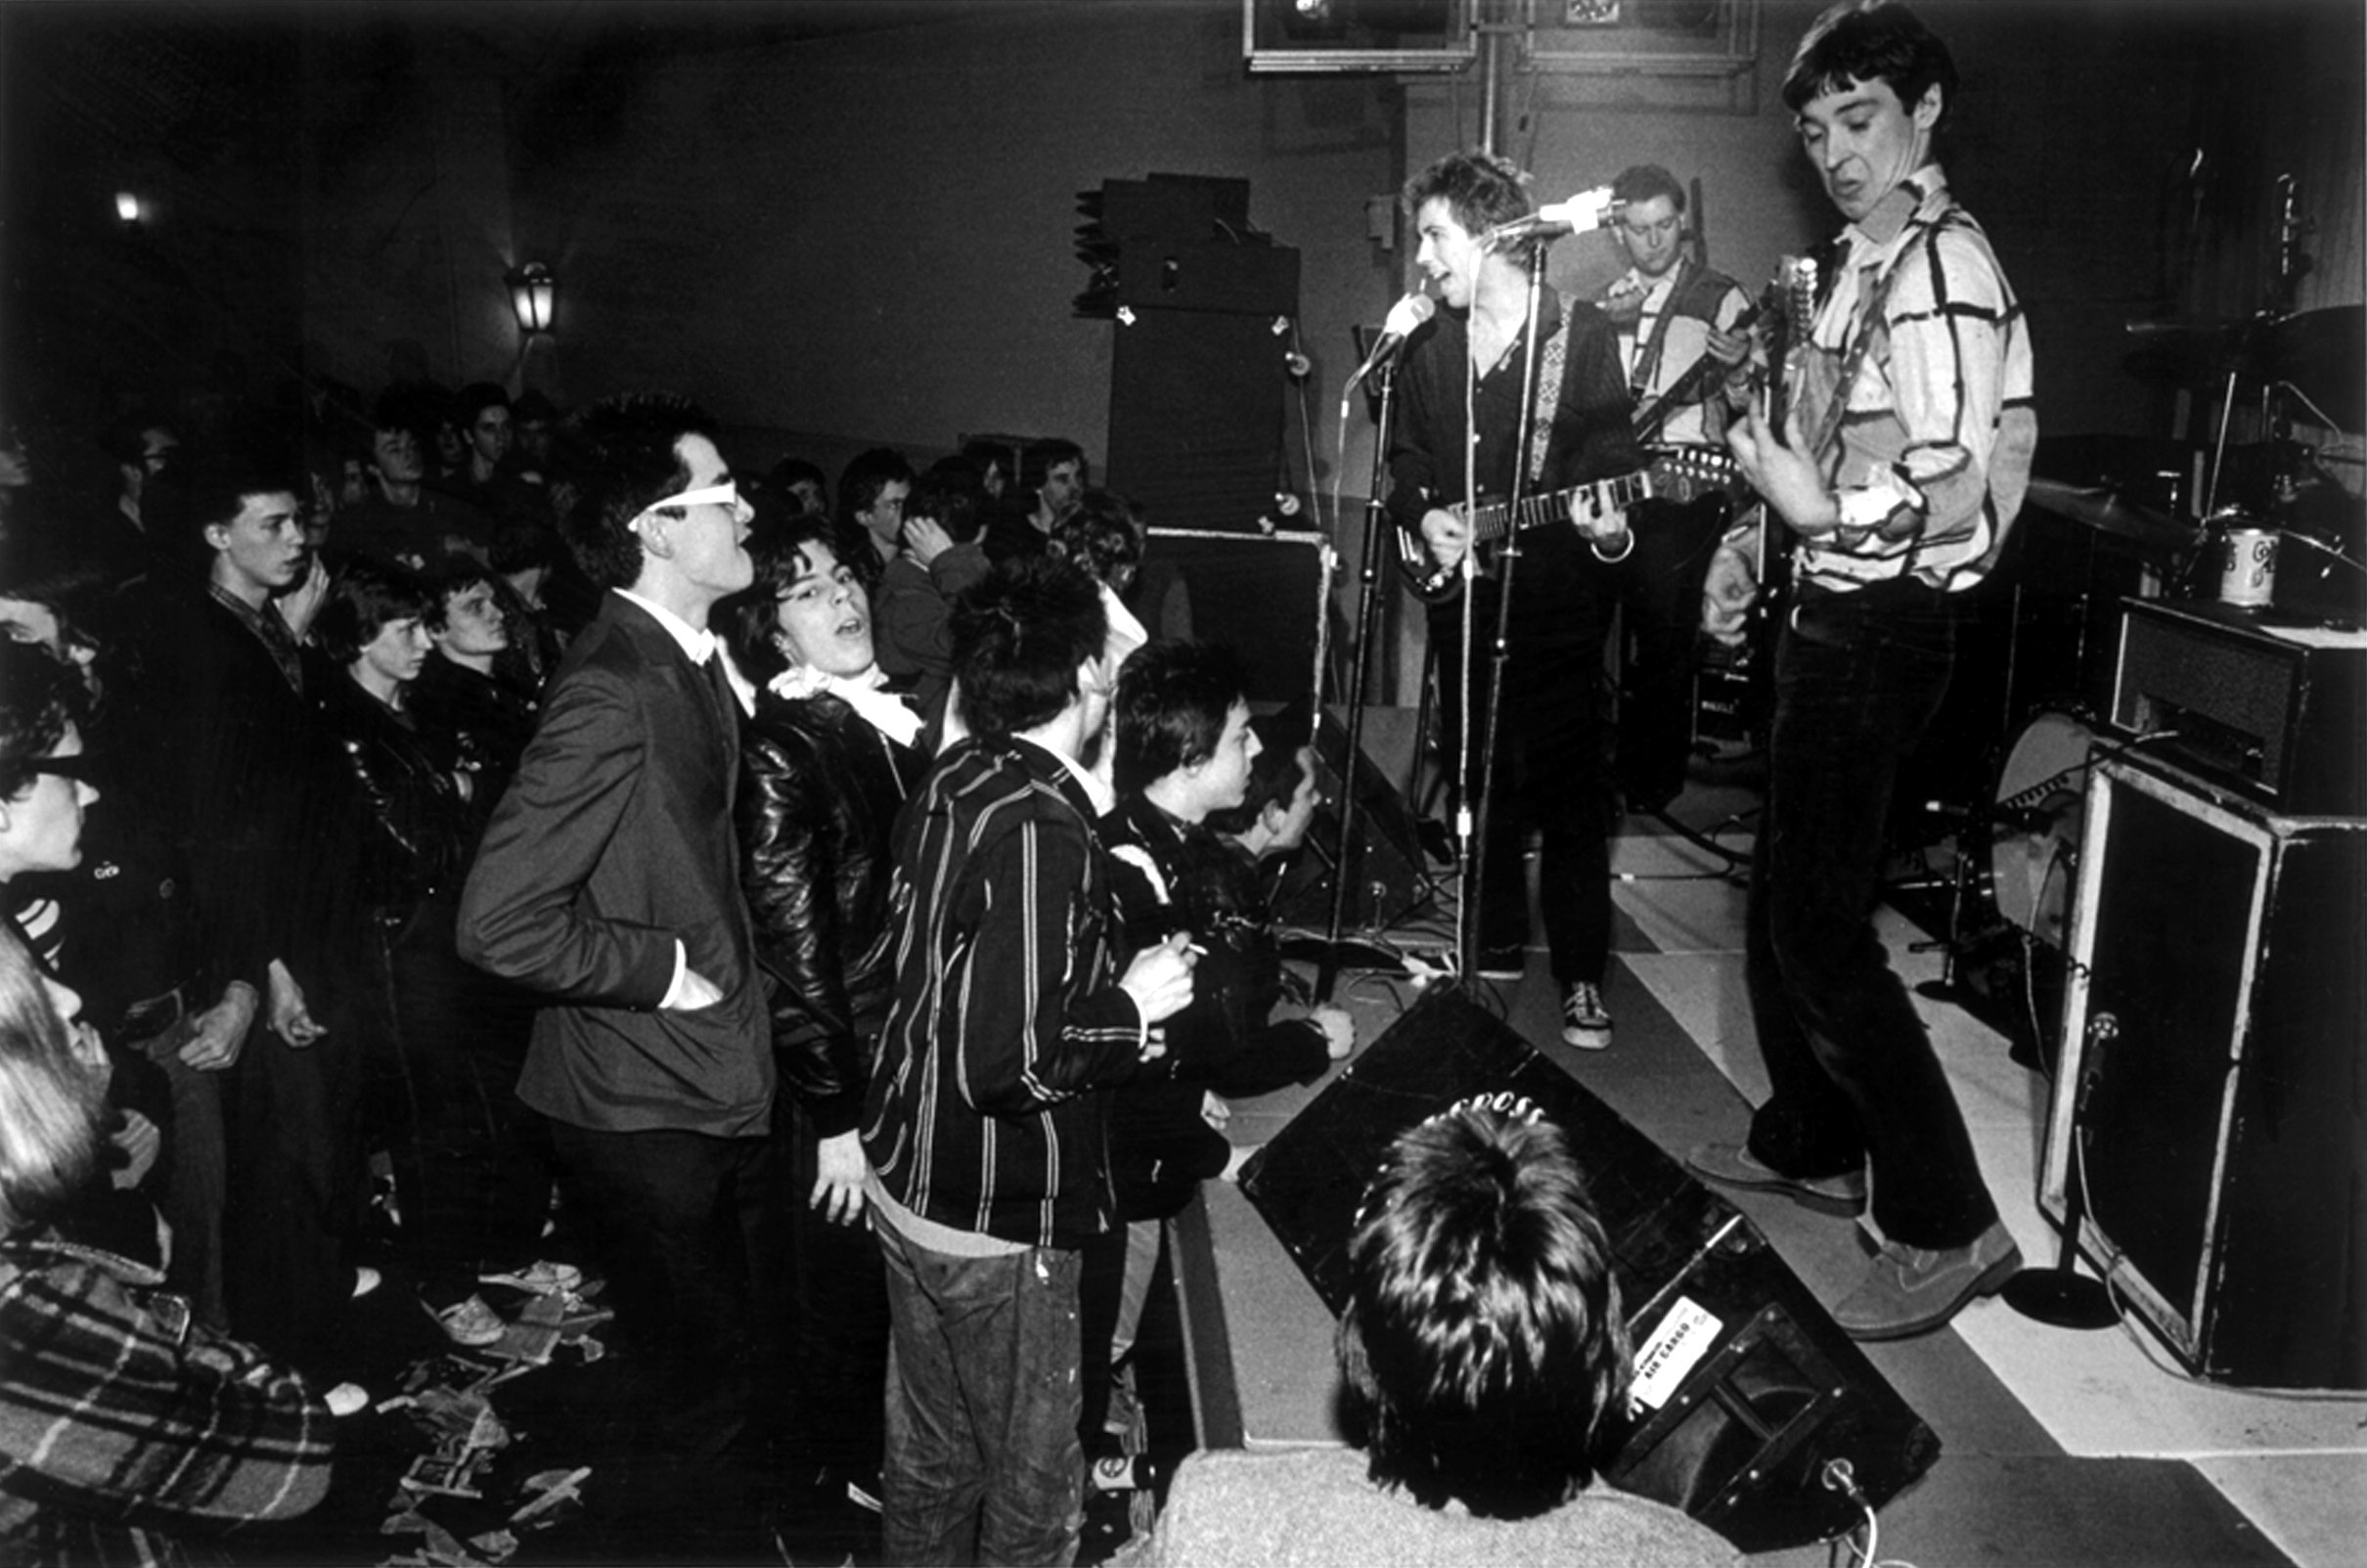 Buzzcocks performing a small gig, circa 1977